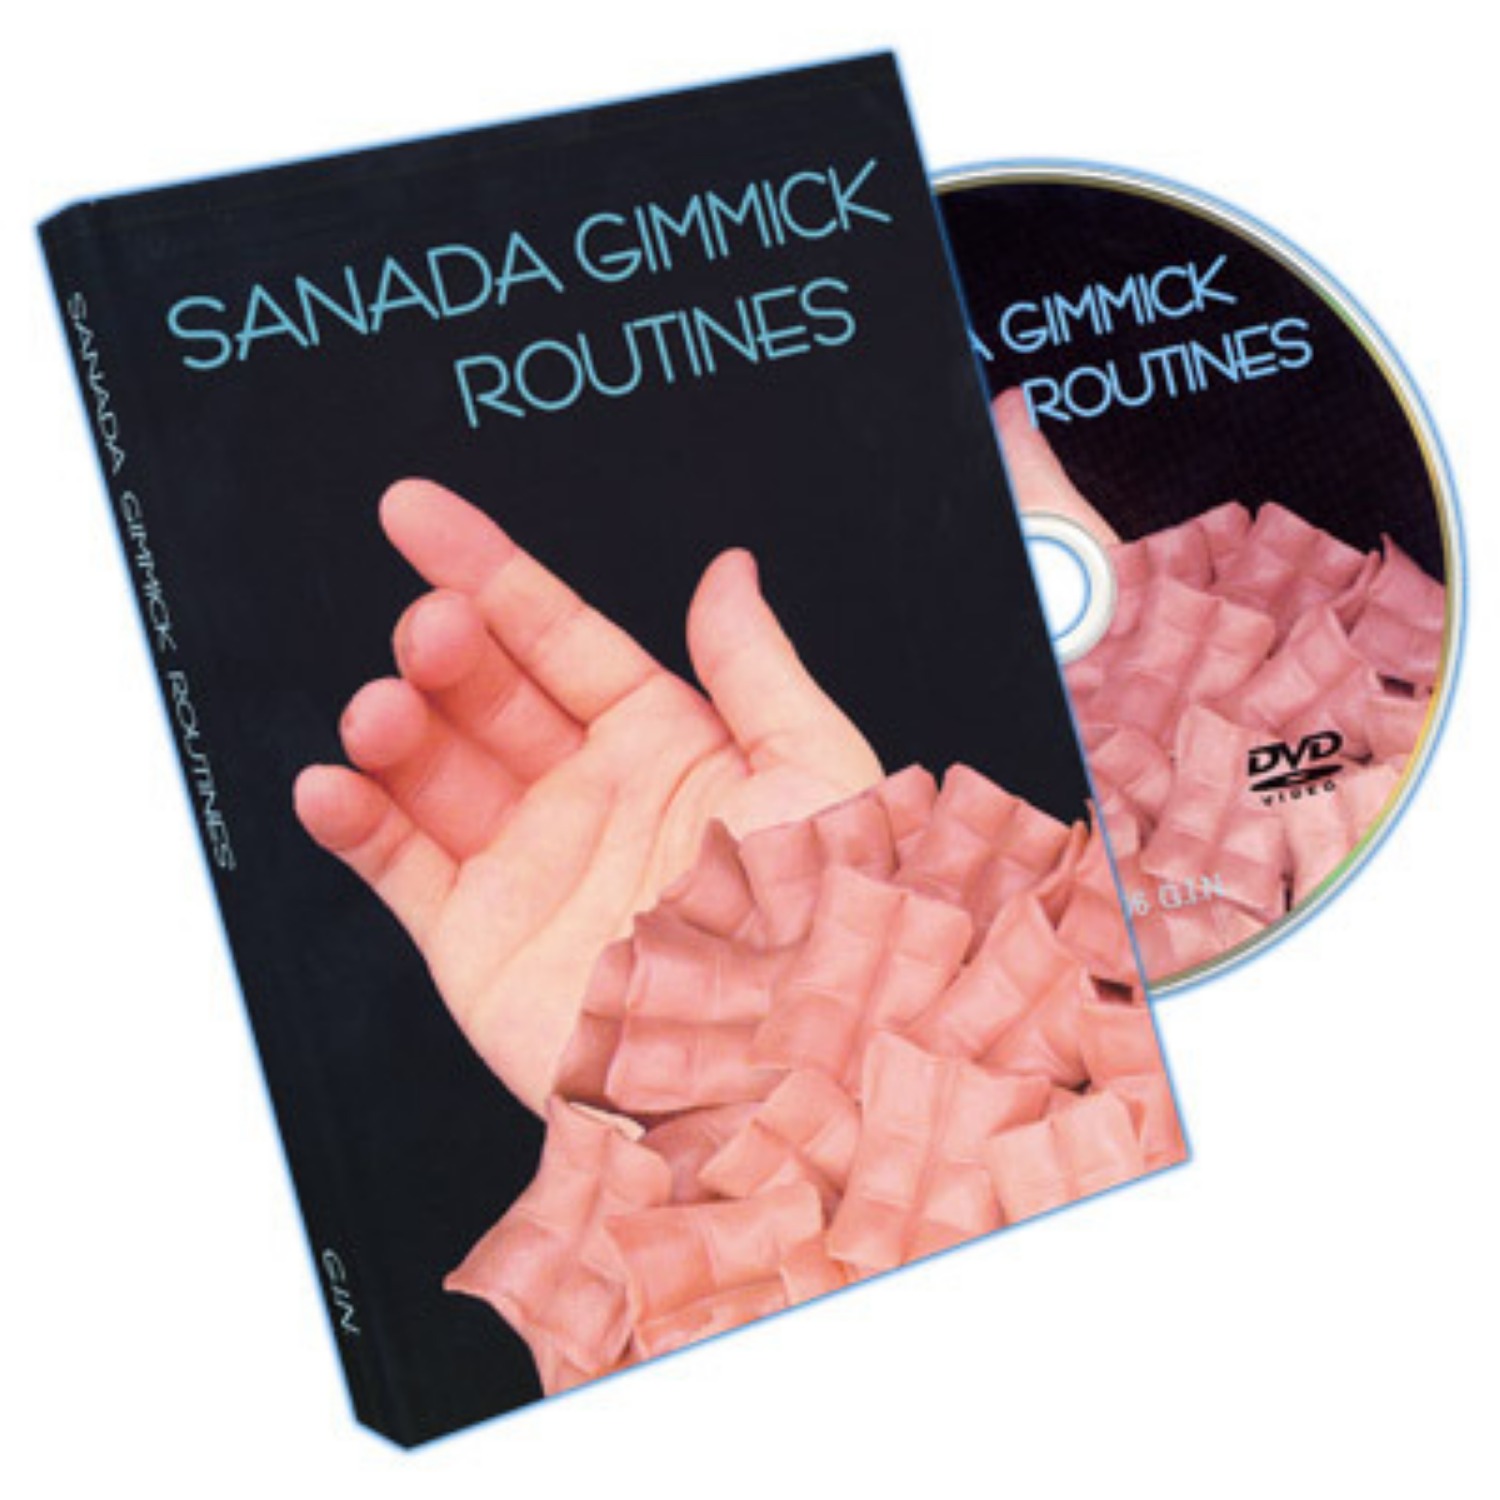 [사나다기믹]Sanada Gimmick Routines  by Toyosane Sanada 기믹을 통해 맨손으론 불가능했던 다양하고 훌륭한 팜연출을 배우시고 연출하실 수있습니다.